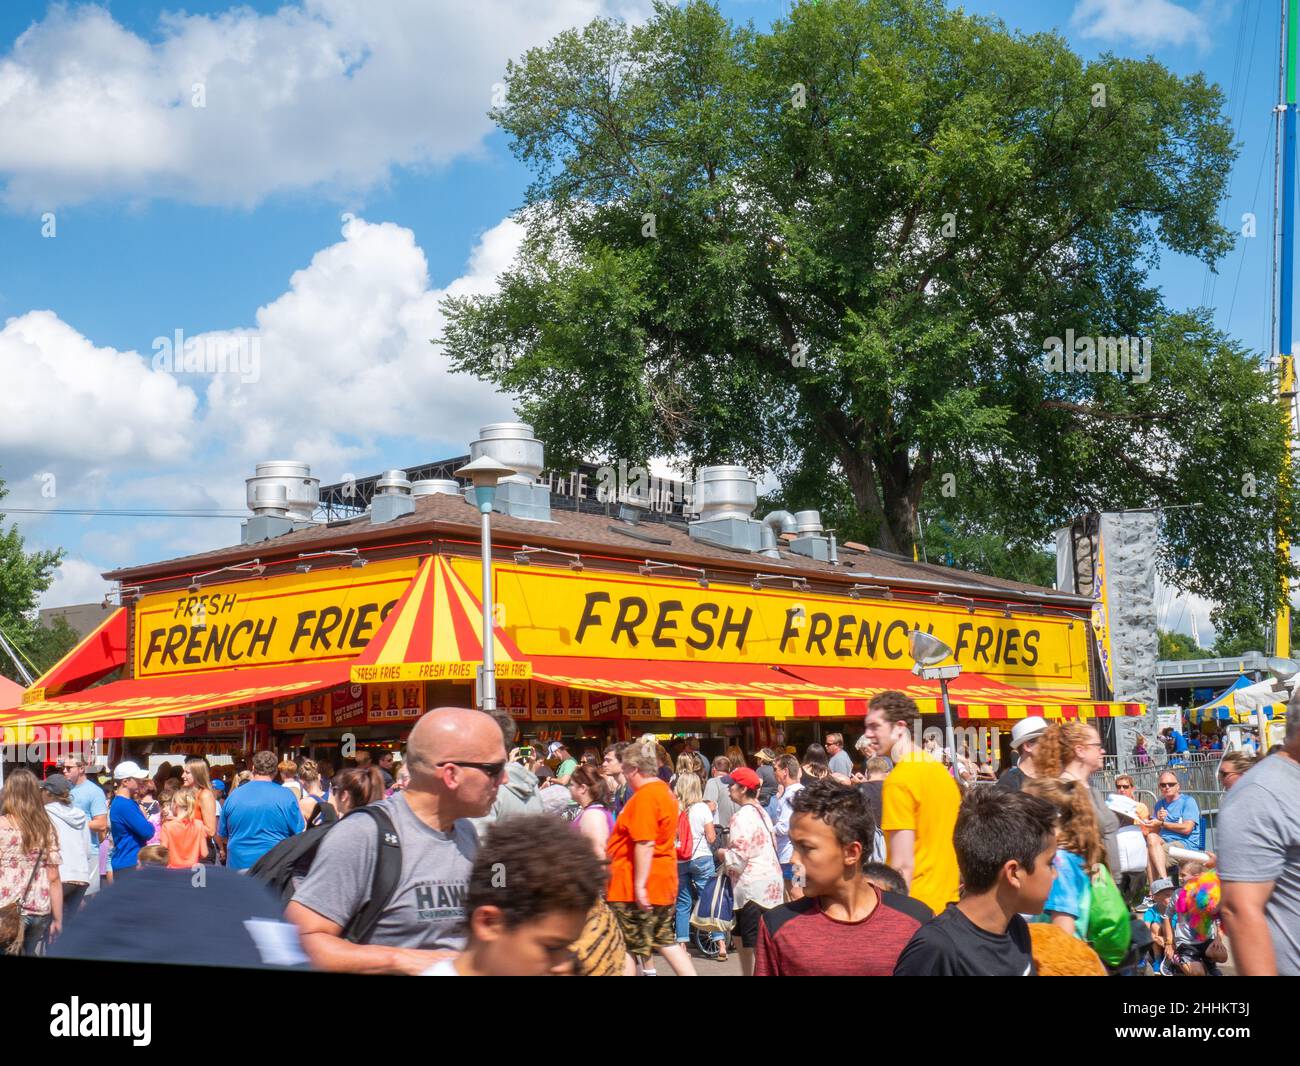 FALCON HEIGHTS, MN - 23. AUGUST 2019: State Fair French Fries Food Stand mit Massen von Menschen, die sich auf der größten jährlichen sogar in Minnesota einmischen. Stockfoto